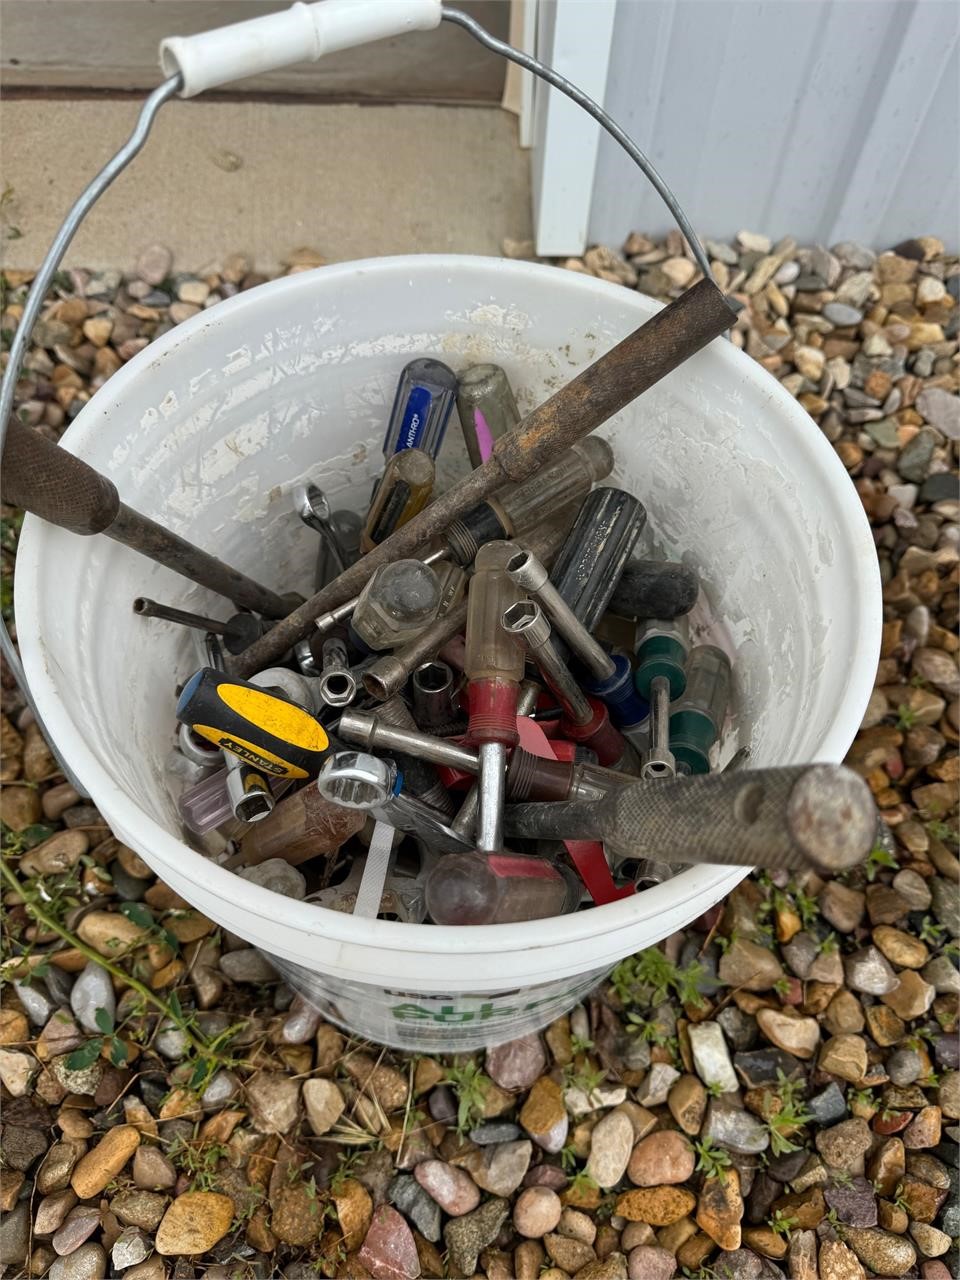 Bucket of random tools